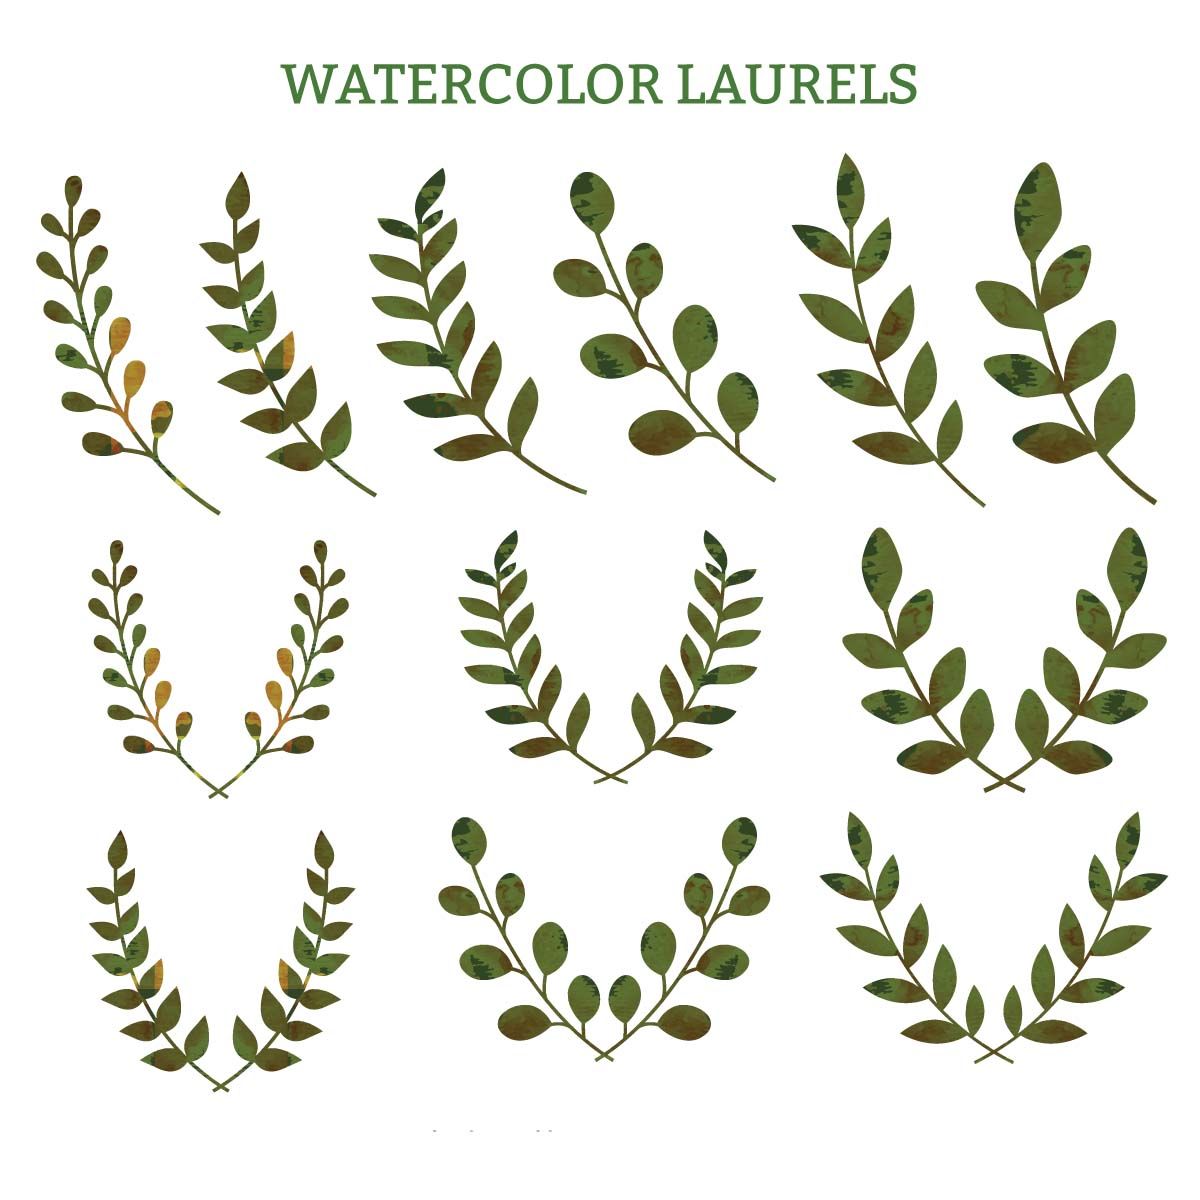 Watercolor laurels green decorative vector